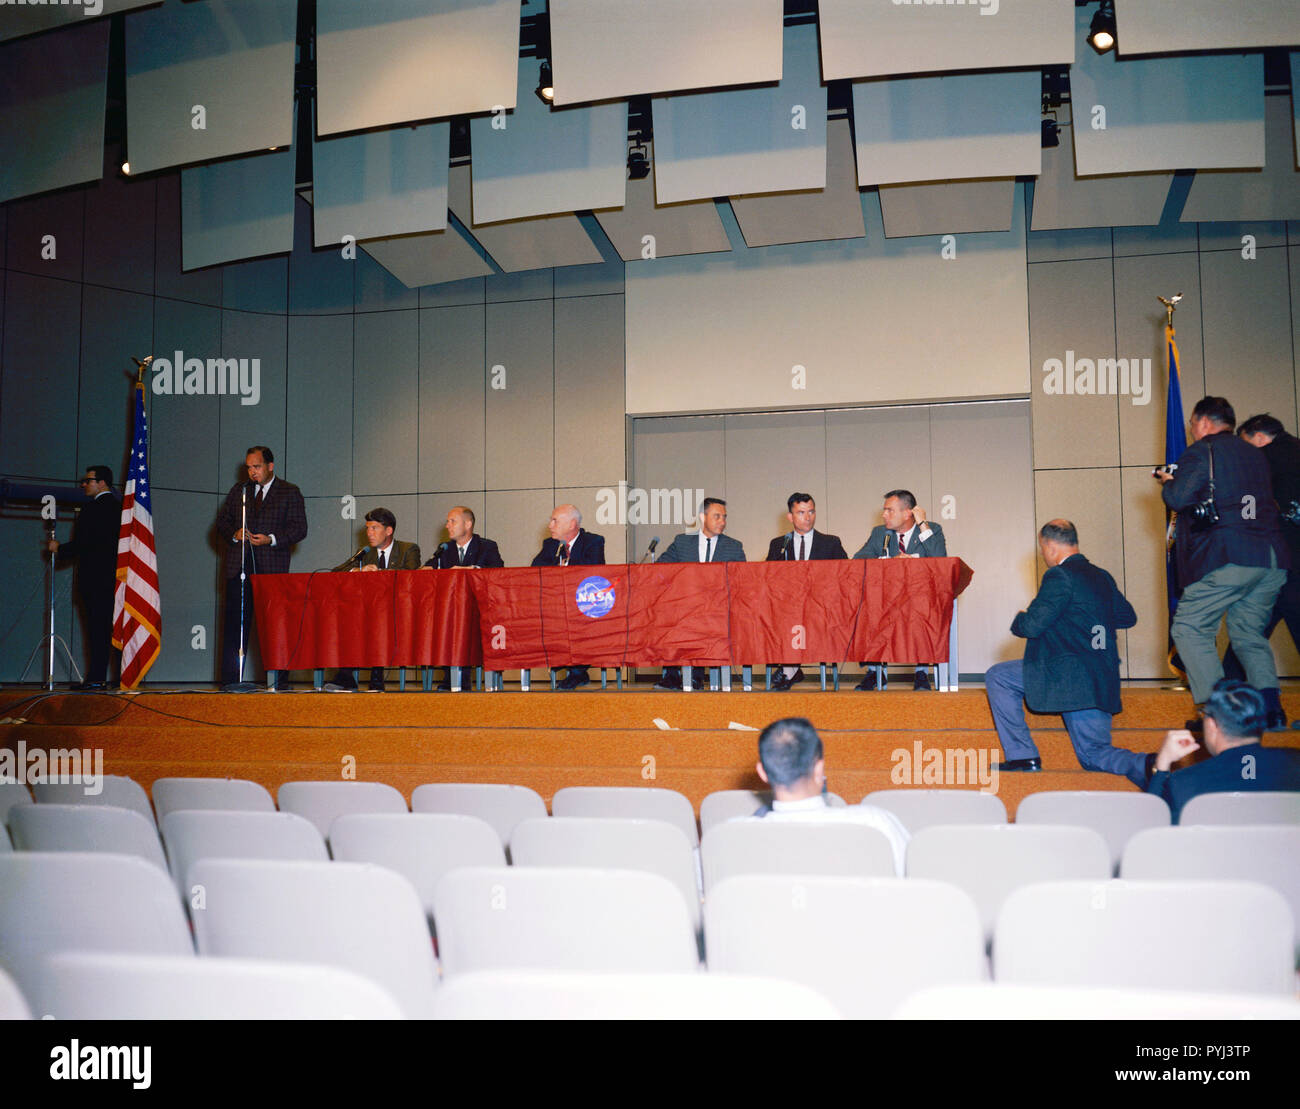 (13 avril 1964) --- Une conférence de presse a eu lieu dans le bâtiment. 1 auditorium au Manned Spacecraft Center de la NASA pour annoncer la première astronaute Gemini sélections. Illustré de gauche à droite, Paul Haney, M.SC. Agente, Affaires publiques (debout) ; les astronautes Walter Schirra et Thomas Stafford ; Dr Robert Gilruth, directeur du MSC ; les astronautes Virgil Grissom et John Young ; et Donald K. Slayton, directeur adjoint des Opérations à l'équipage de MSC. Banque D'Images